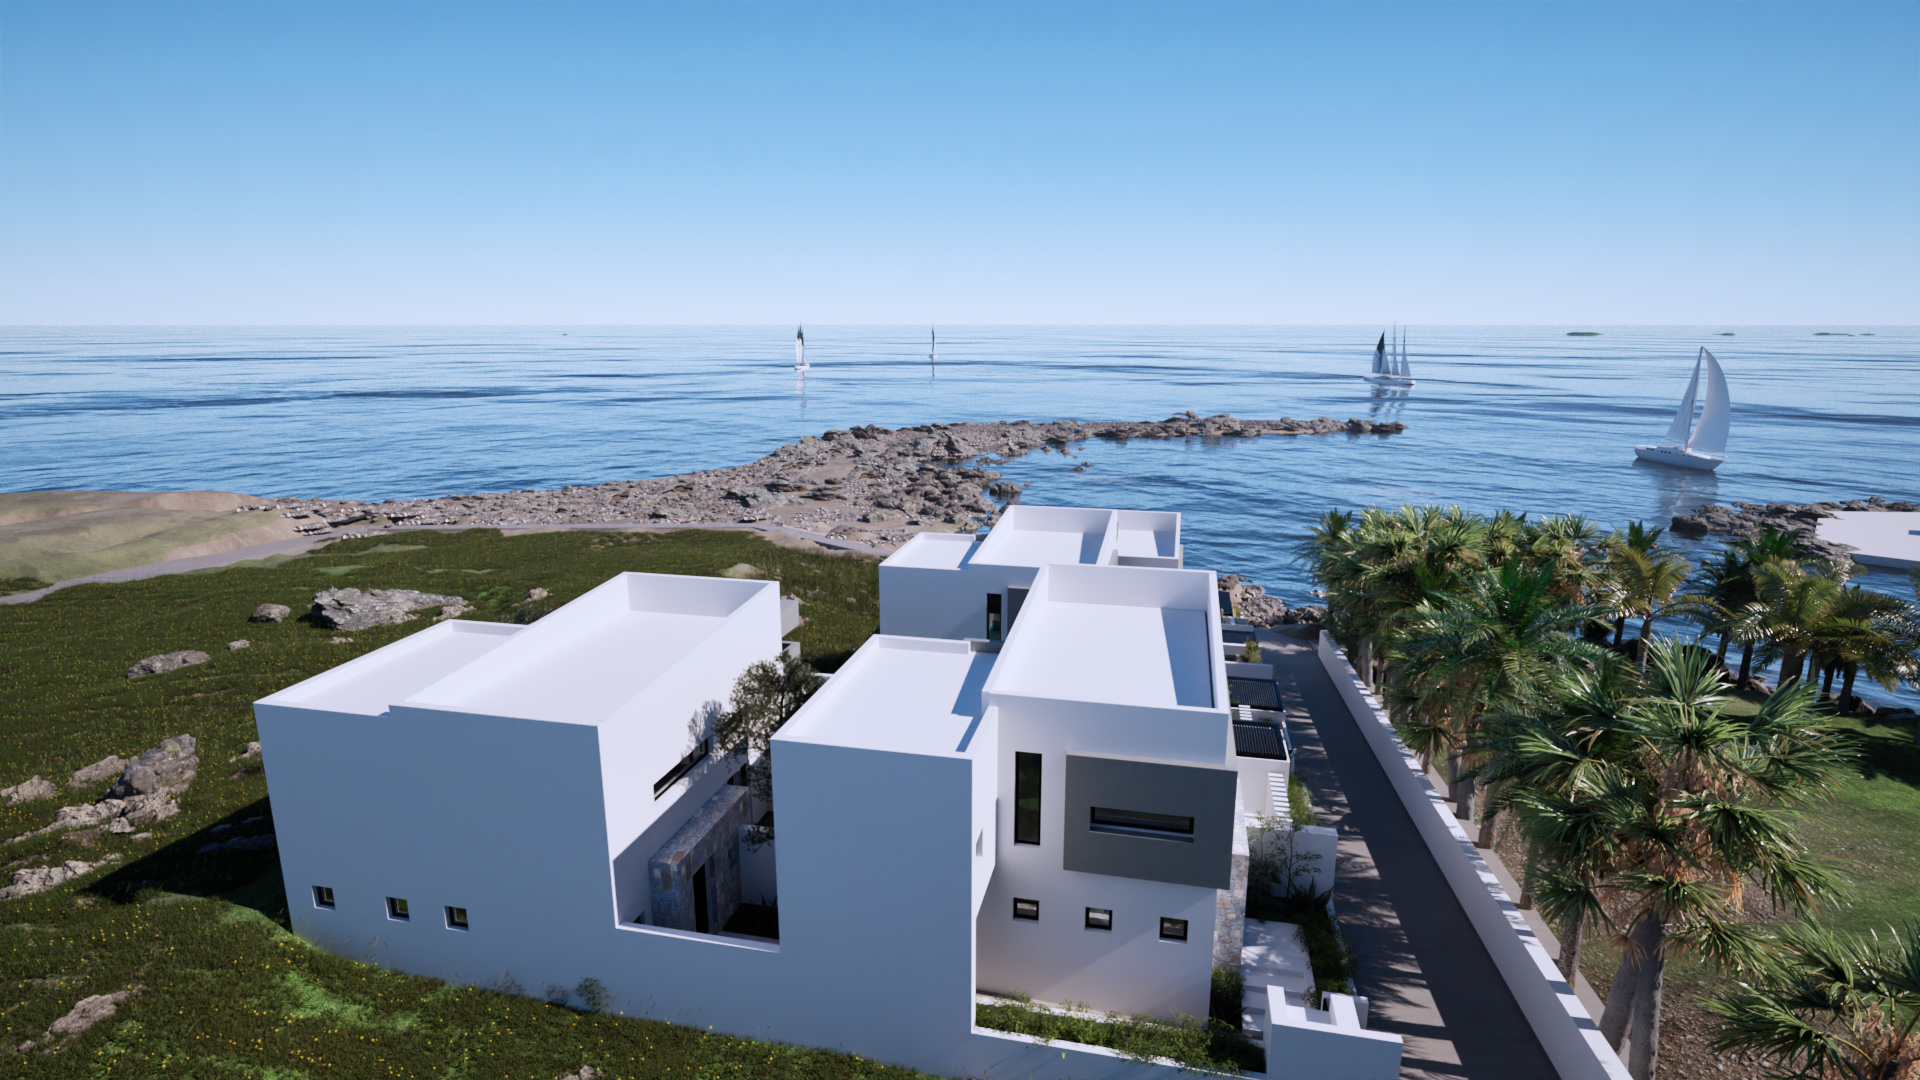 Εξαιρετικό παραθαλάσσιο συγκρότημα 4 κατοικιών πάνω στη θάλασσα. 